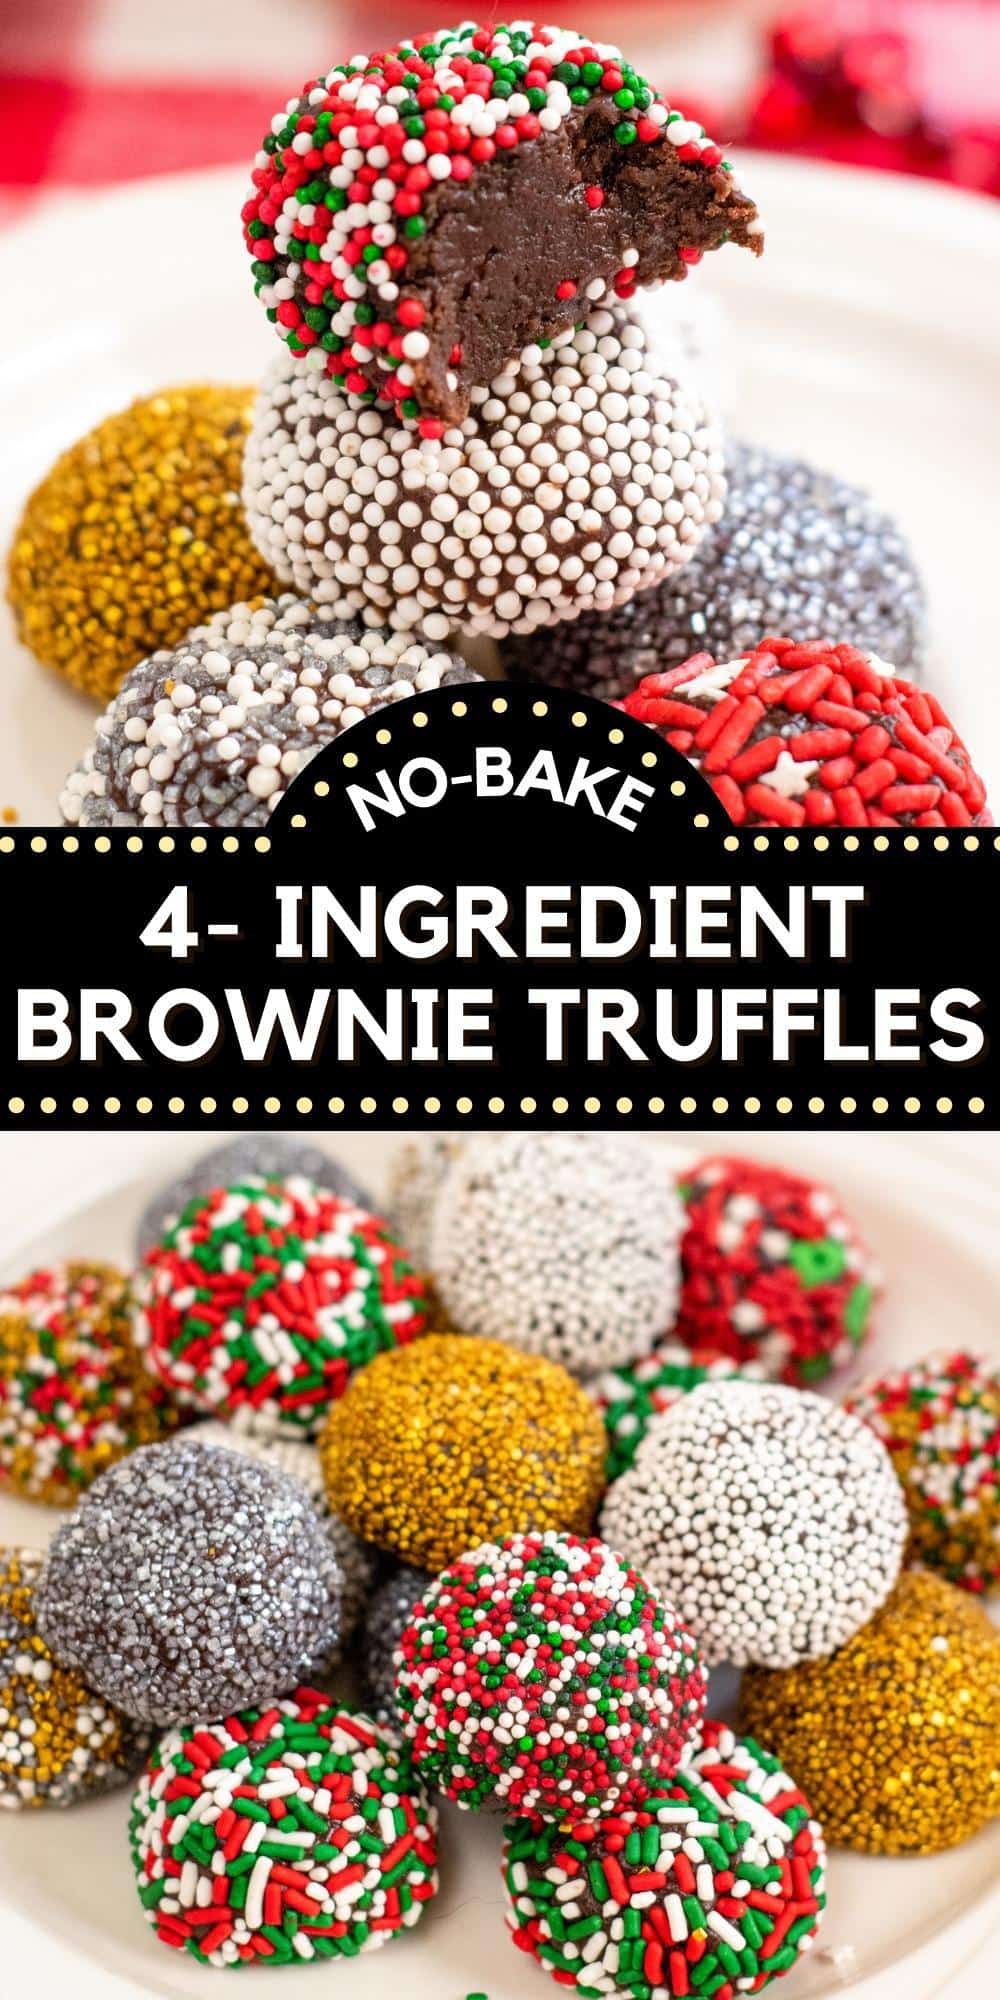 No-Bake 4-Ingredient Brownie Truffles